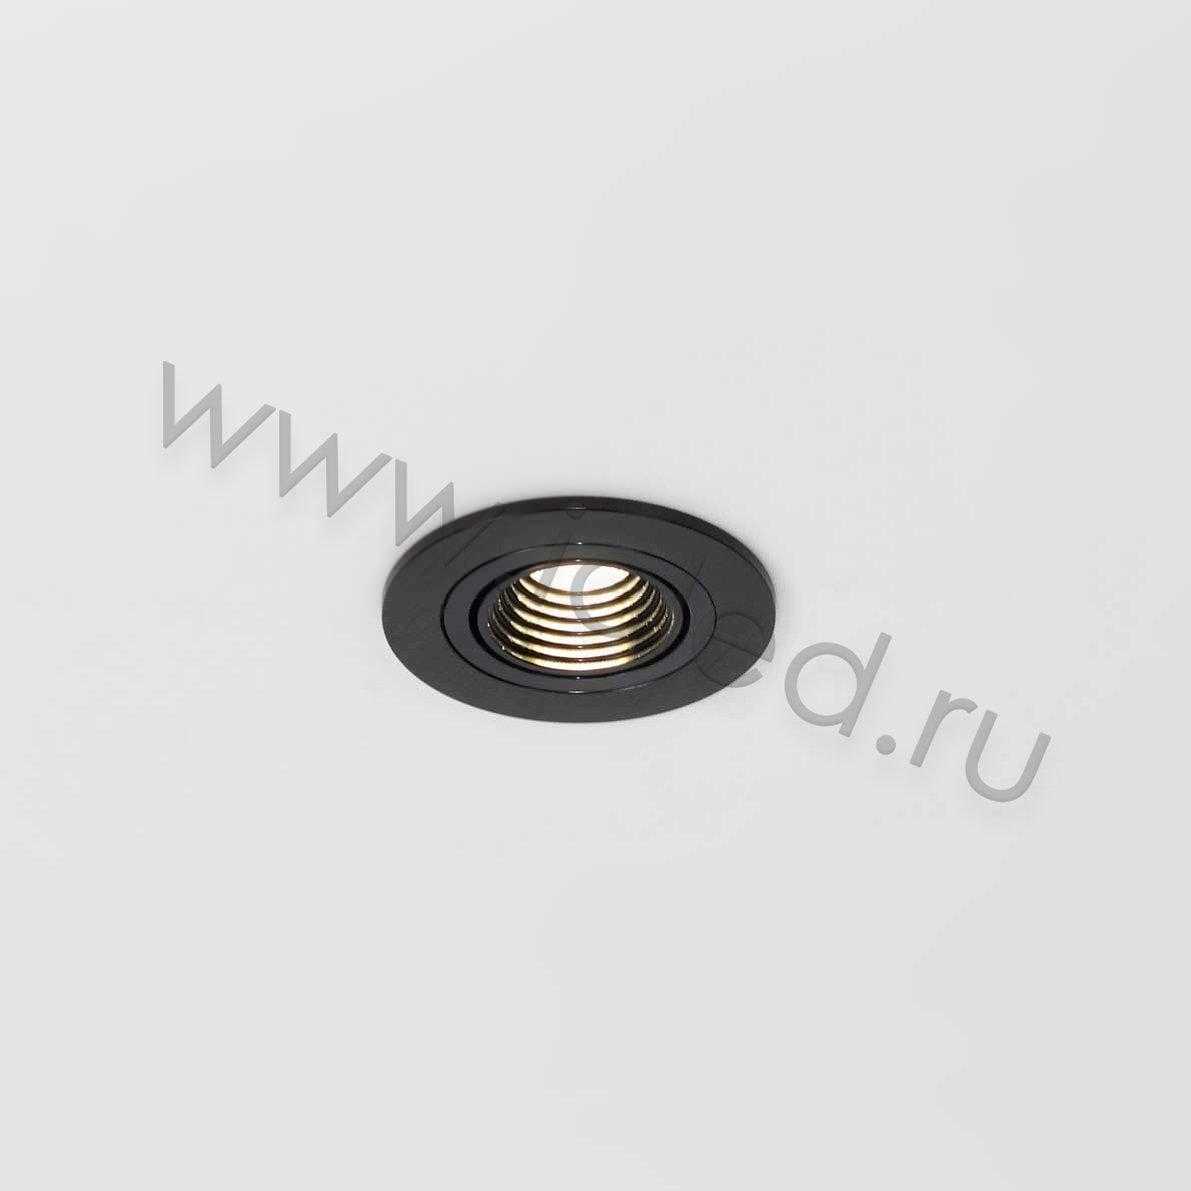 Светодиодные светильники Светодиодный светильник встраиваемый 65 Series black housing BW202 (3W,220V,day white)